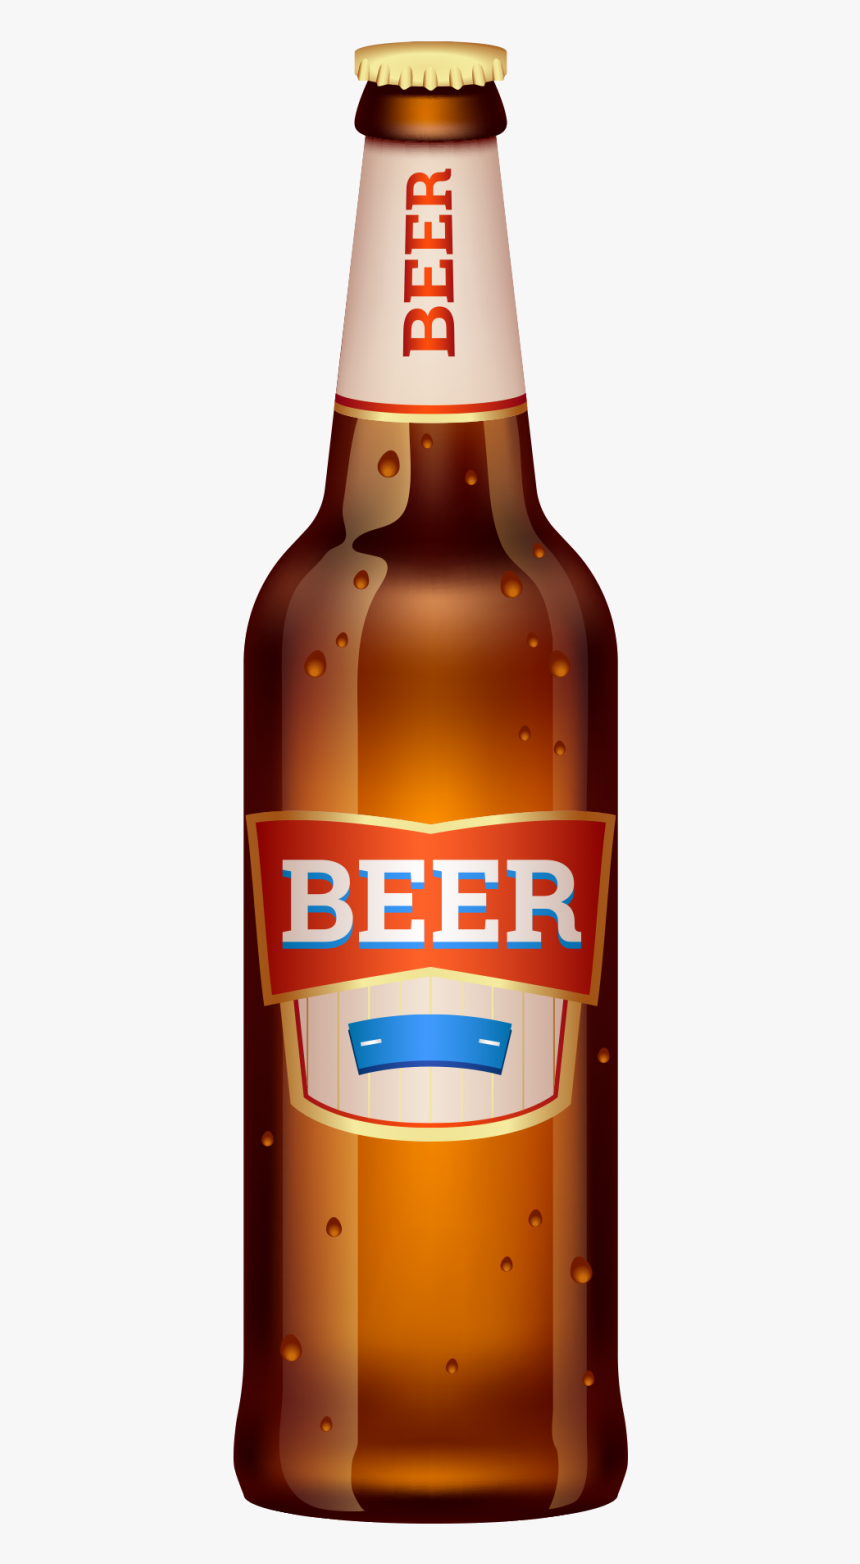 Beer Bottle Transparent Png - Beer Bottle Images Hd, Png Download, Free Download